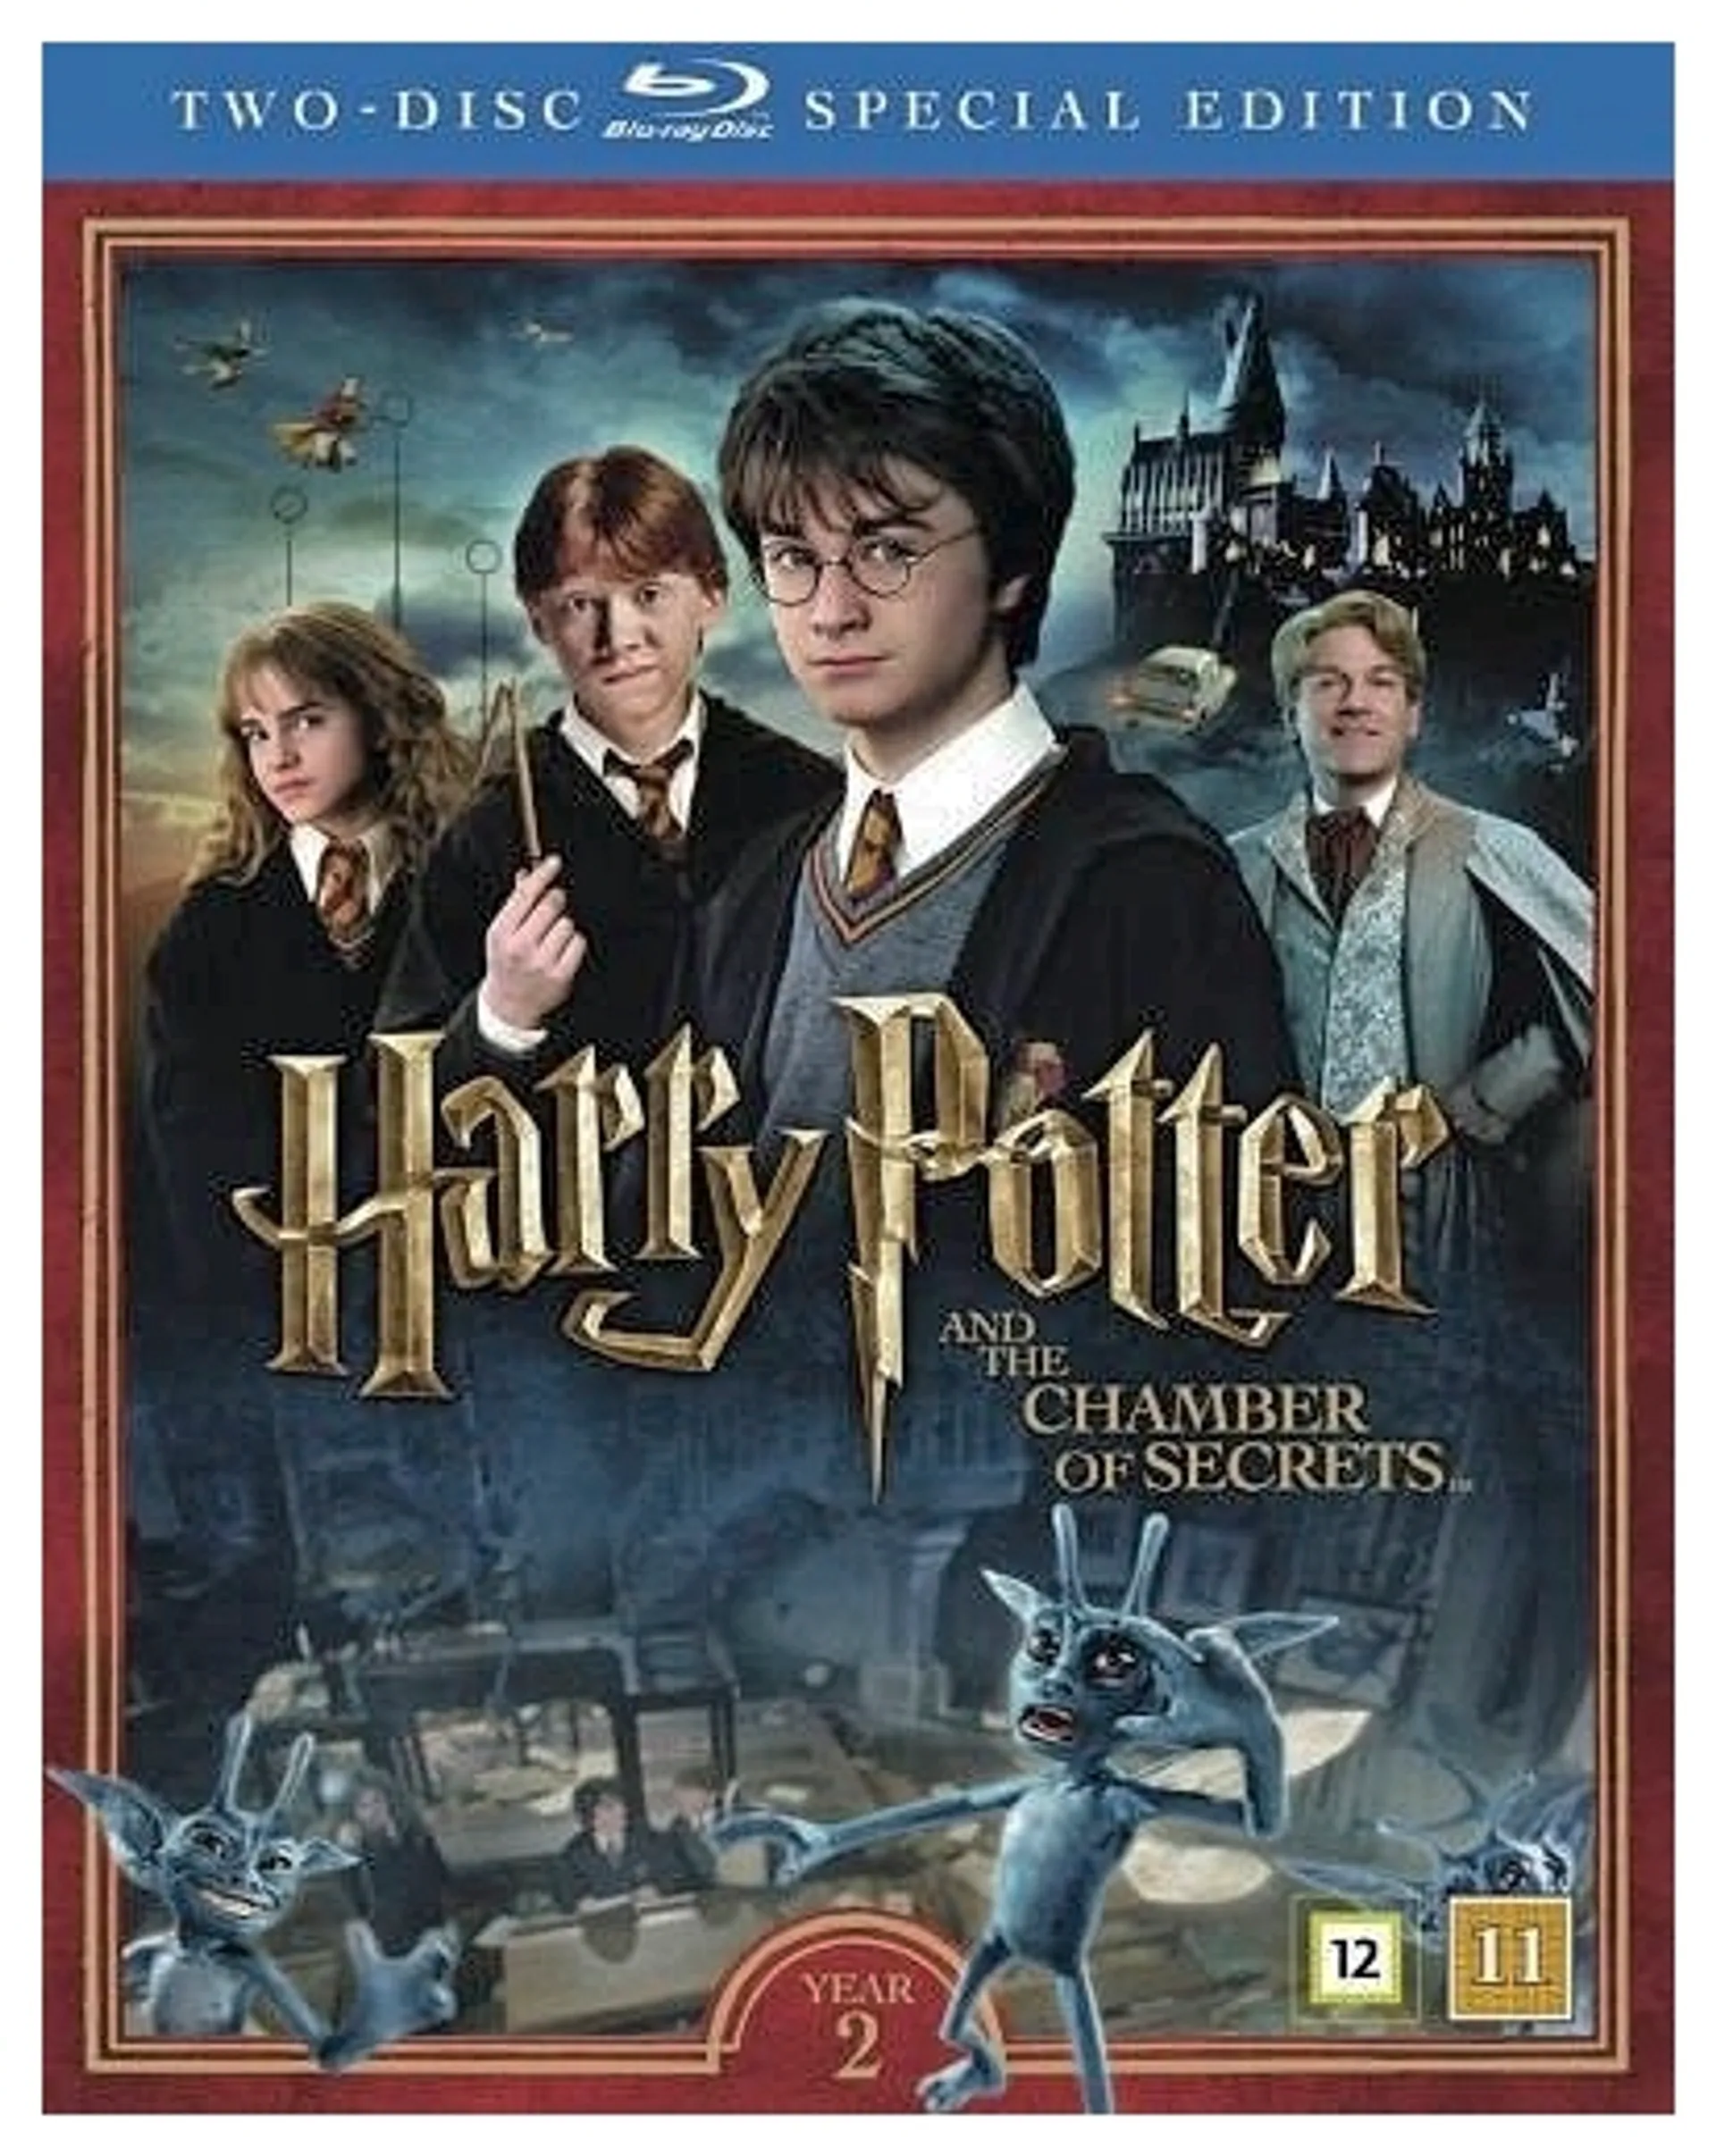 Harry Potter ja salaisuuksien kammio + Dokumentti 2Blu-ray